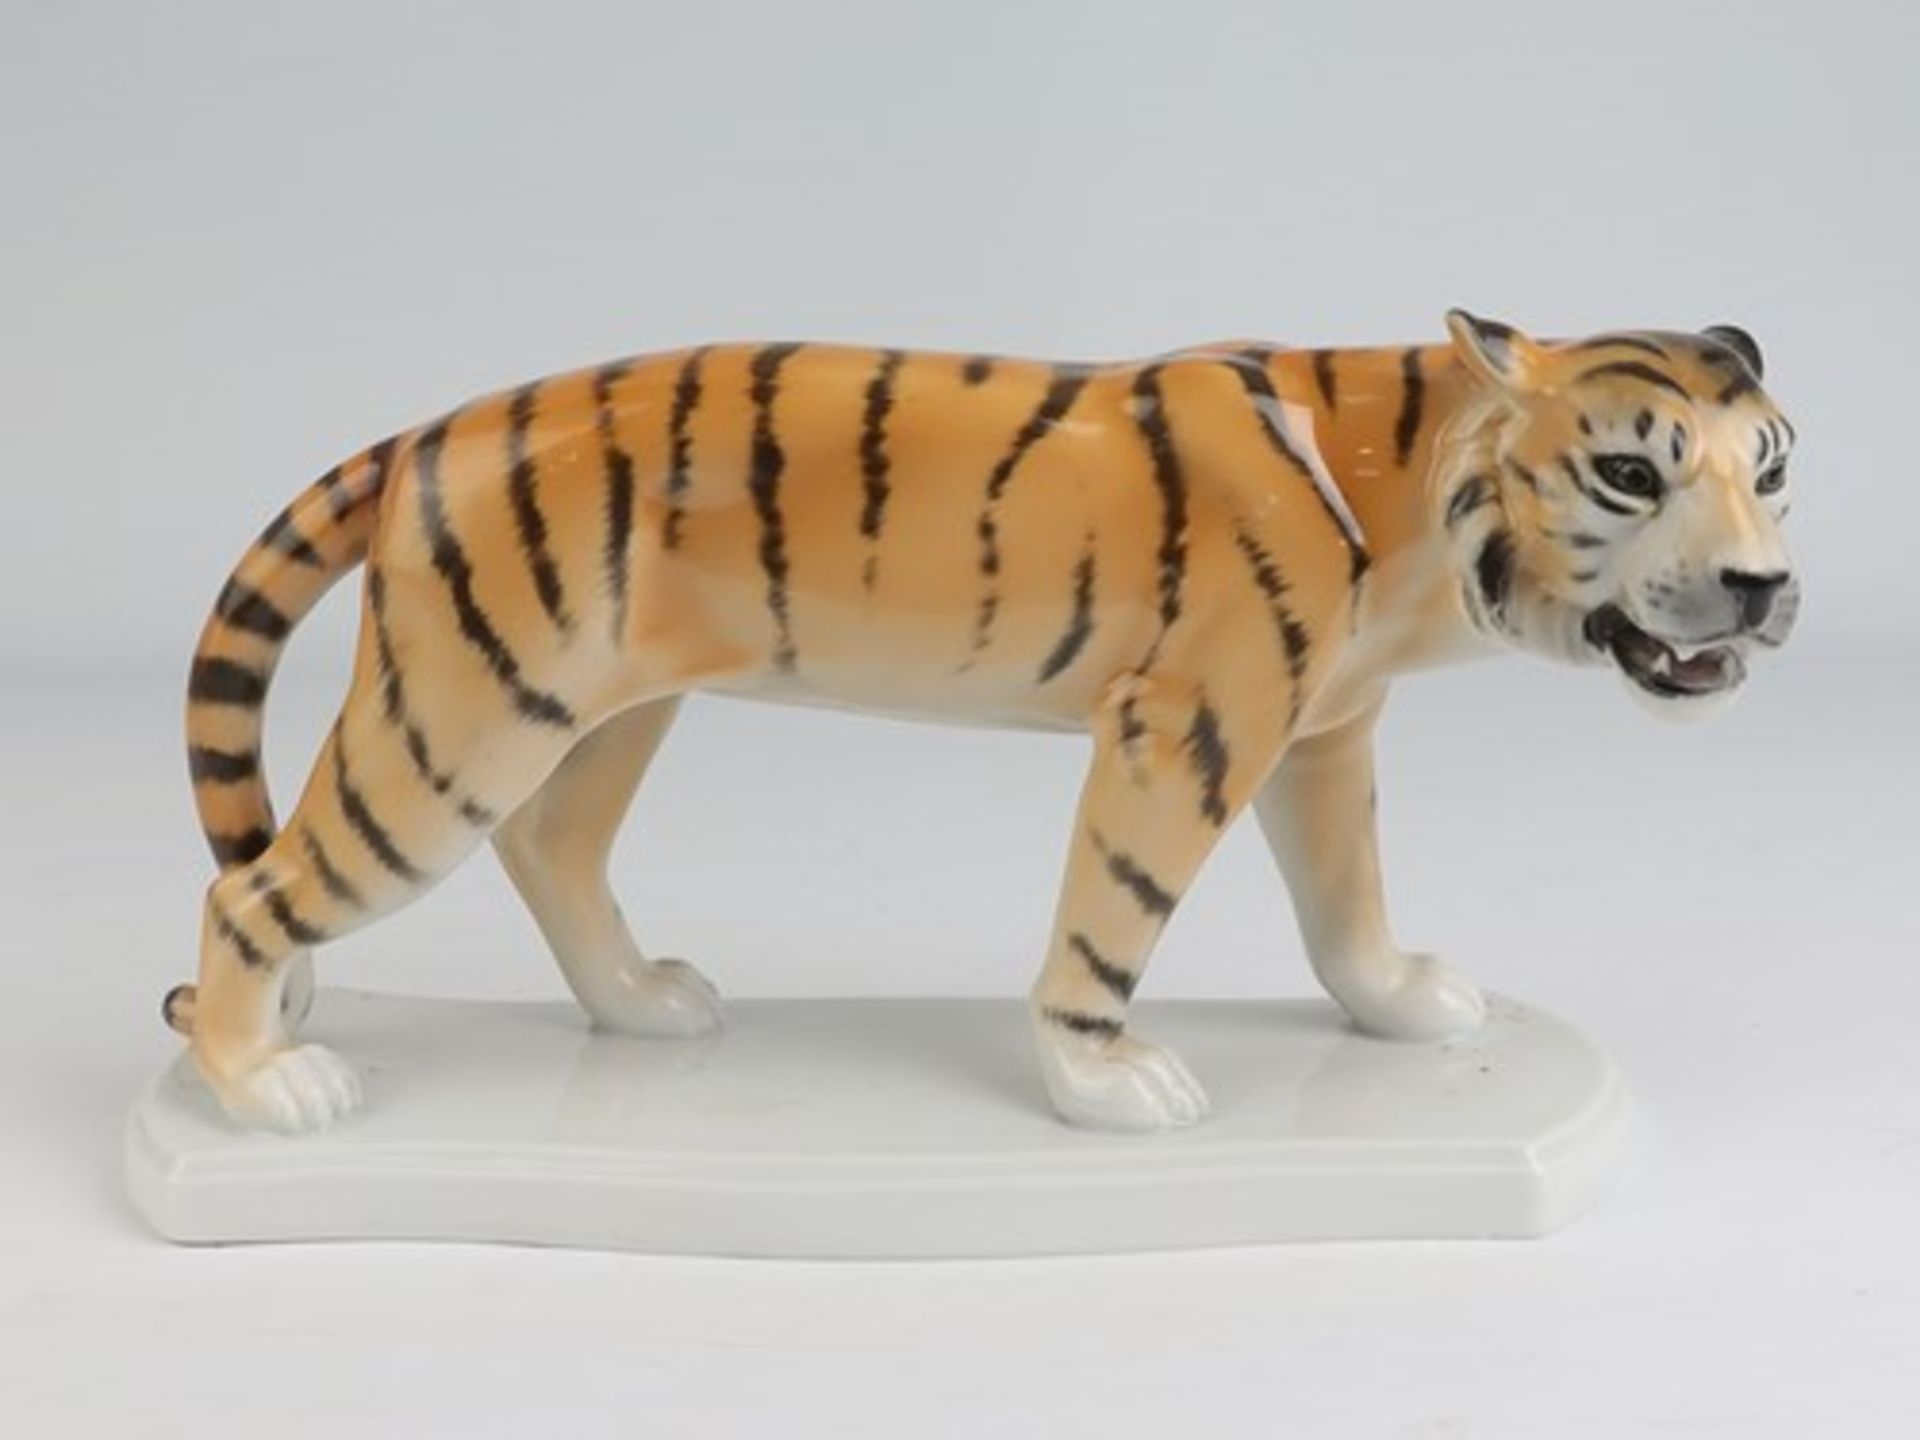 Fasold & Stauch - Figurgrüne Marke, Modellnr. 16328, geschwungener Stand, stehender Tiger, min. - Bild 4 aus 6